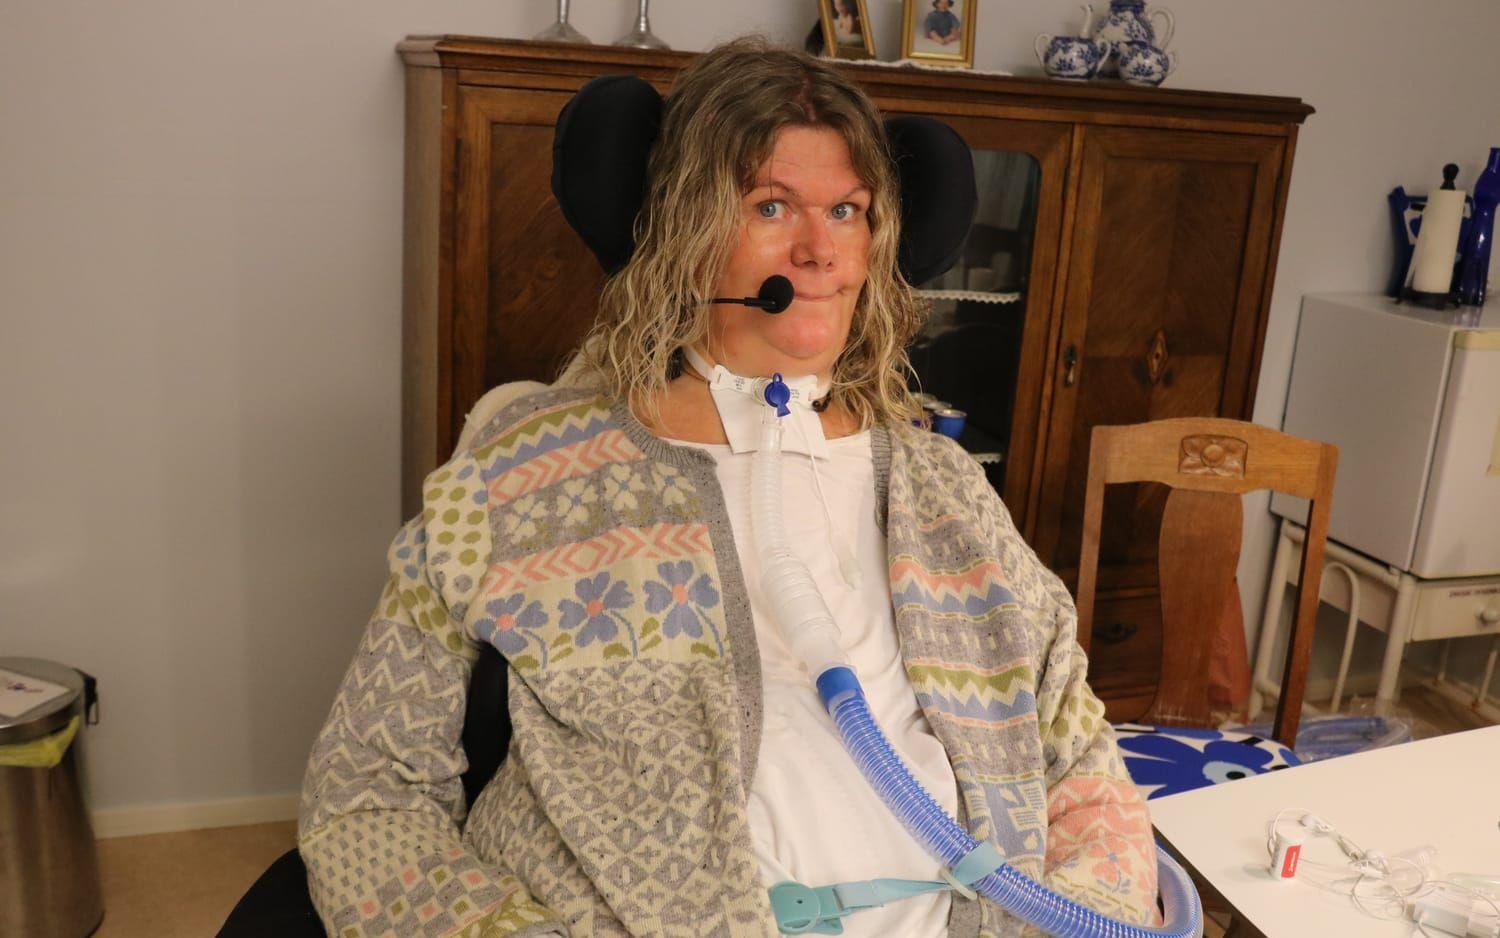 Heléne Olsson från Henån har levt med sjukdomen ALS i 12 år. Hon är förlamad från halsen och nedåt och måste ha en respirator för att kunna andas, men drivs av en enorm livsvilja. 